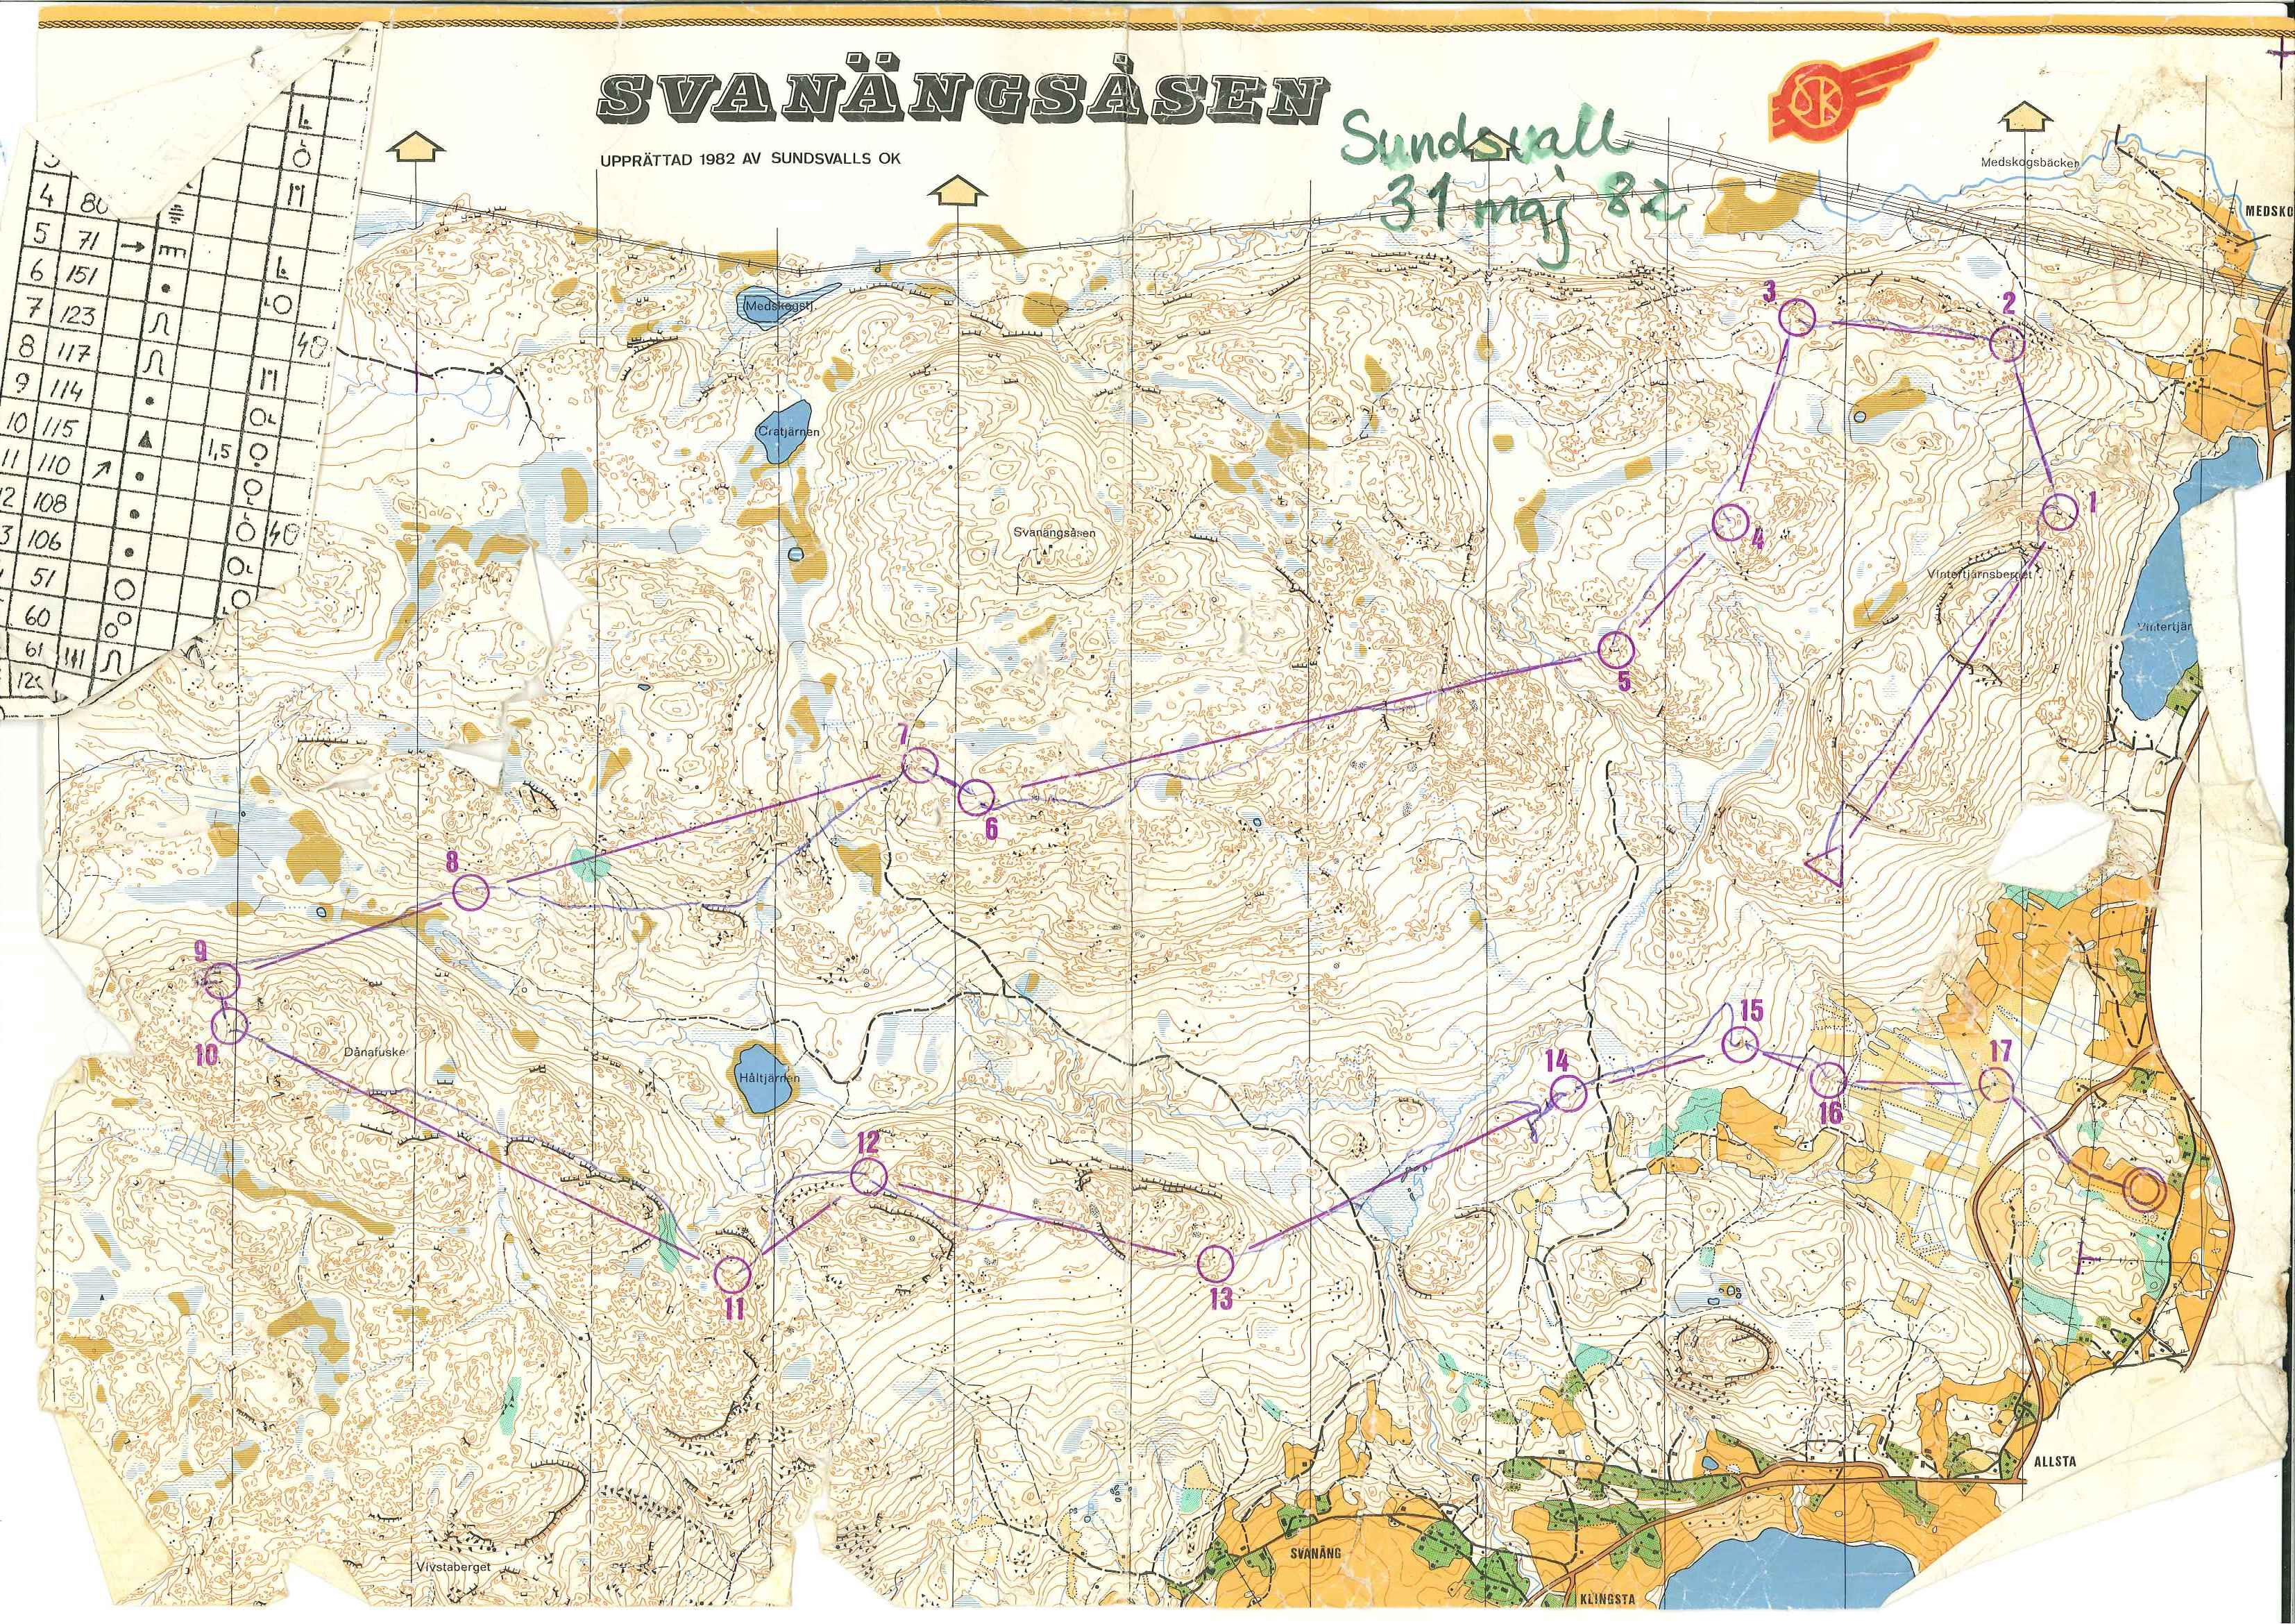 Sundsvall (31-05-1982)